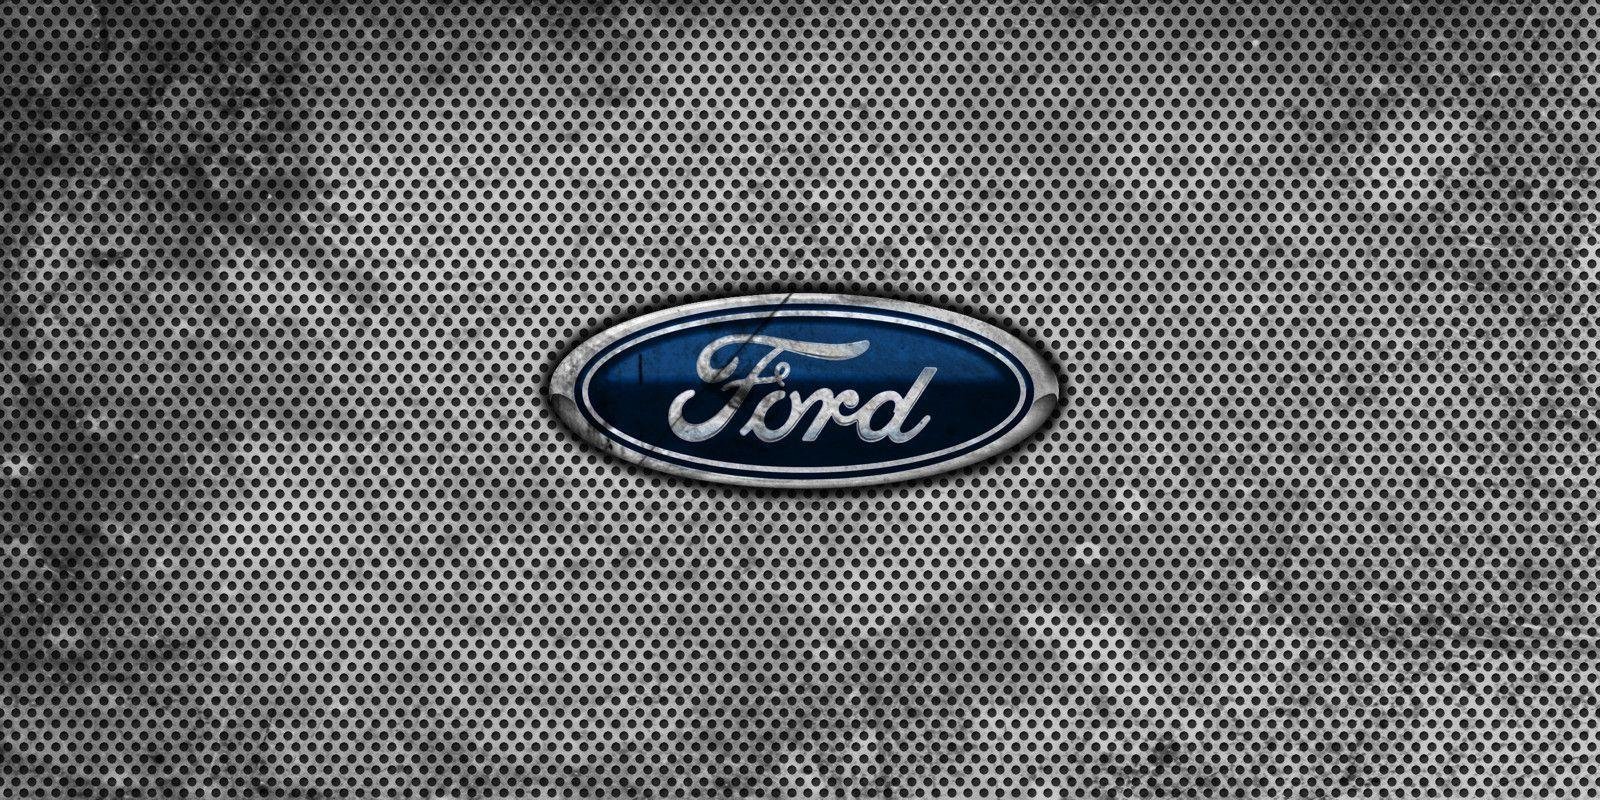 Ford wallpaper hd